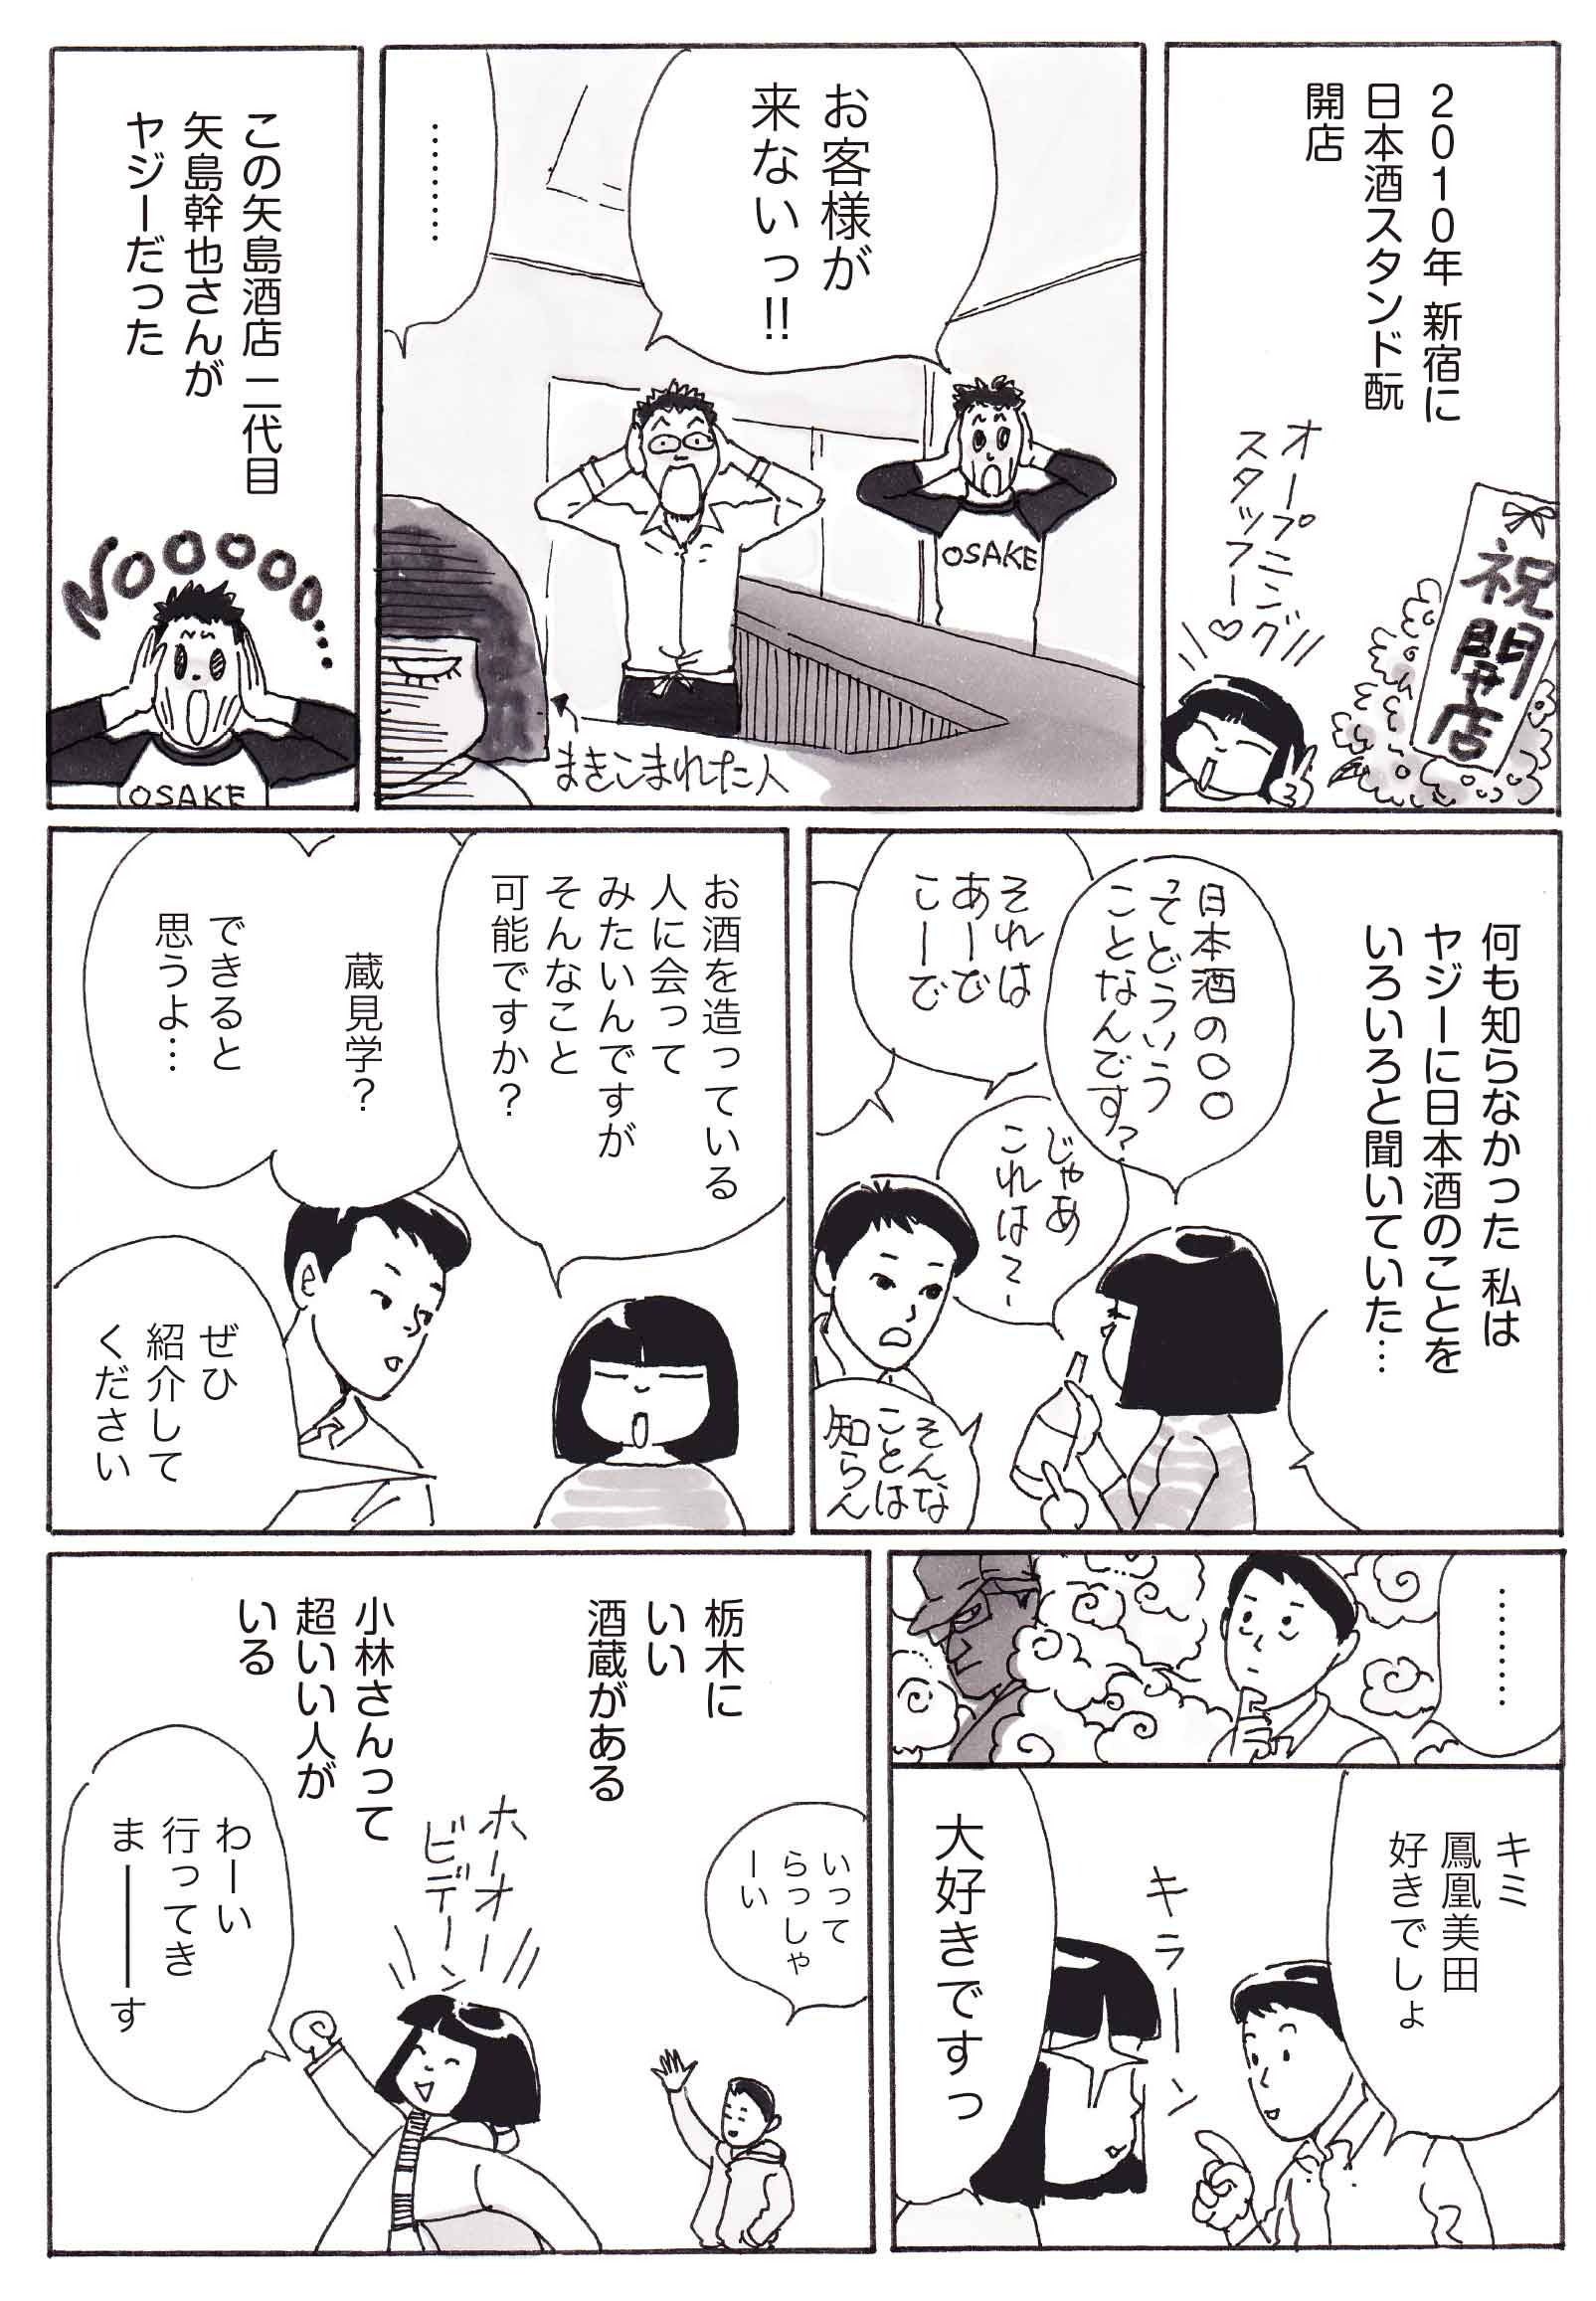 日本酒に恋して 巻き込まれた人 無料で読める漫画 ４コマサイト パチクリ